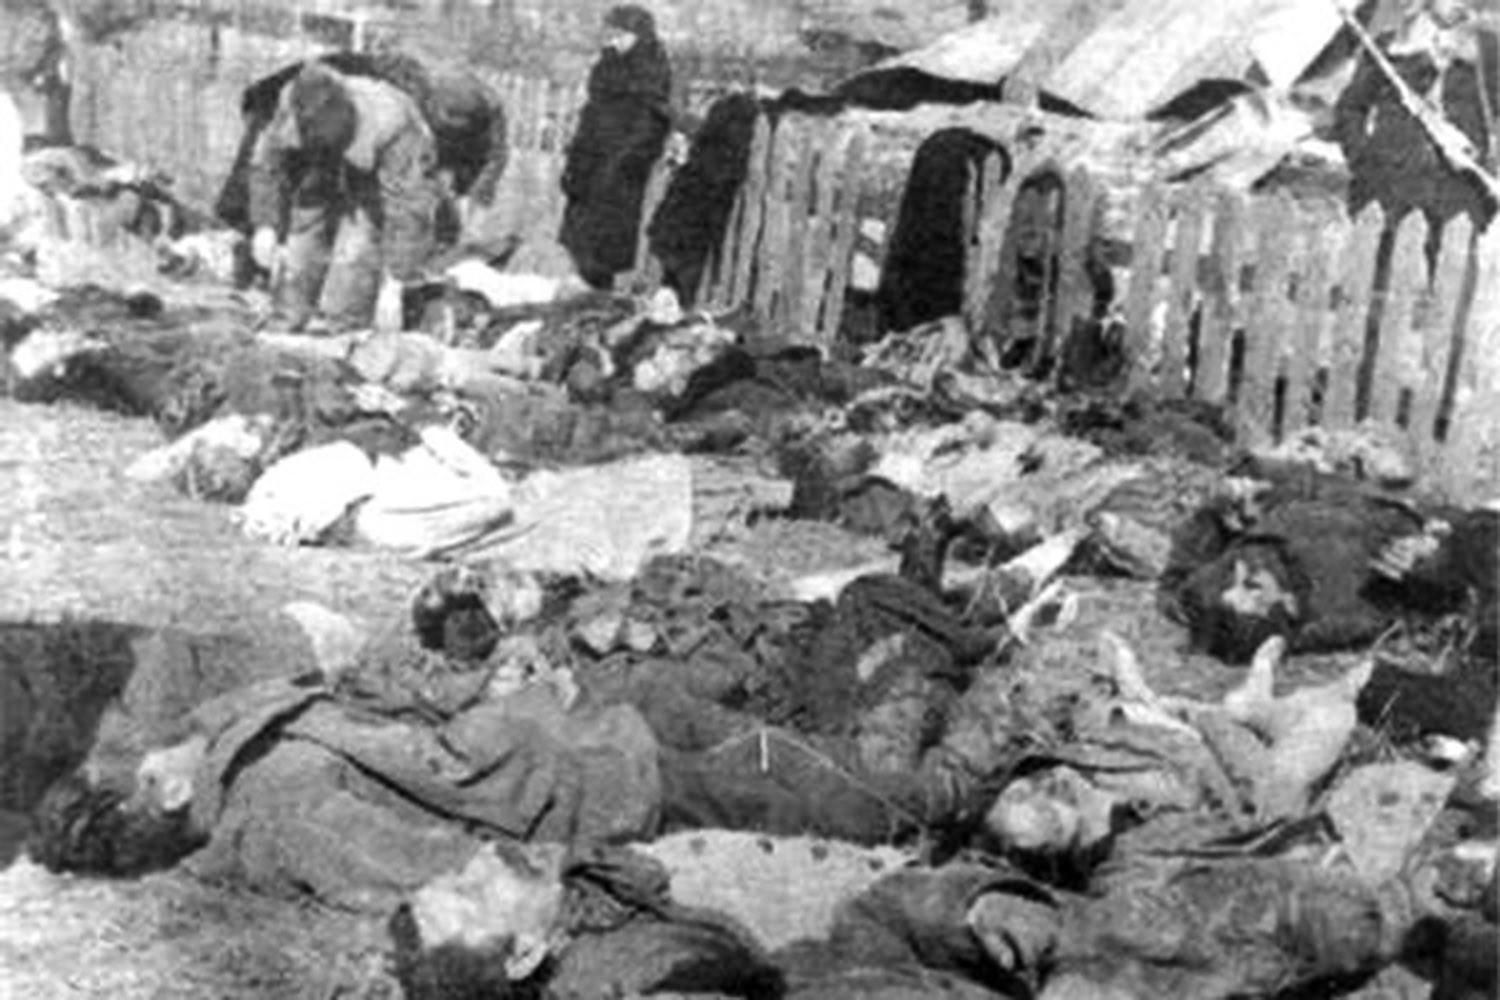 Свезённые на идентификацию и похороны трупы поляков — жертв резни, 26 марта 1943 г © Wikimedia Commons